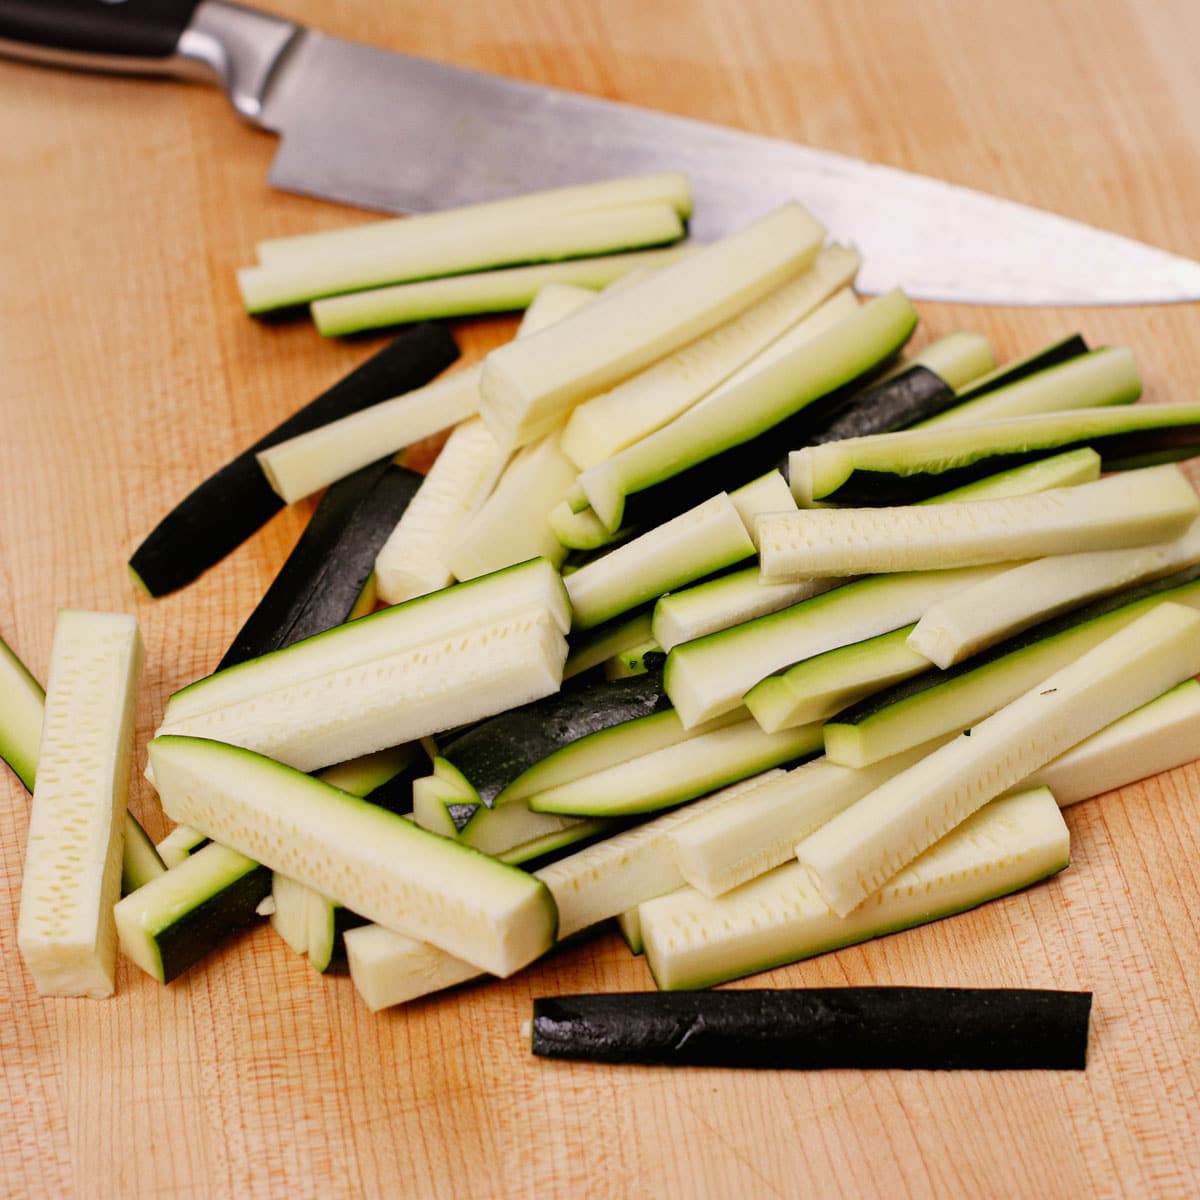 Sliced zucchini into fry-sized strips